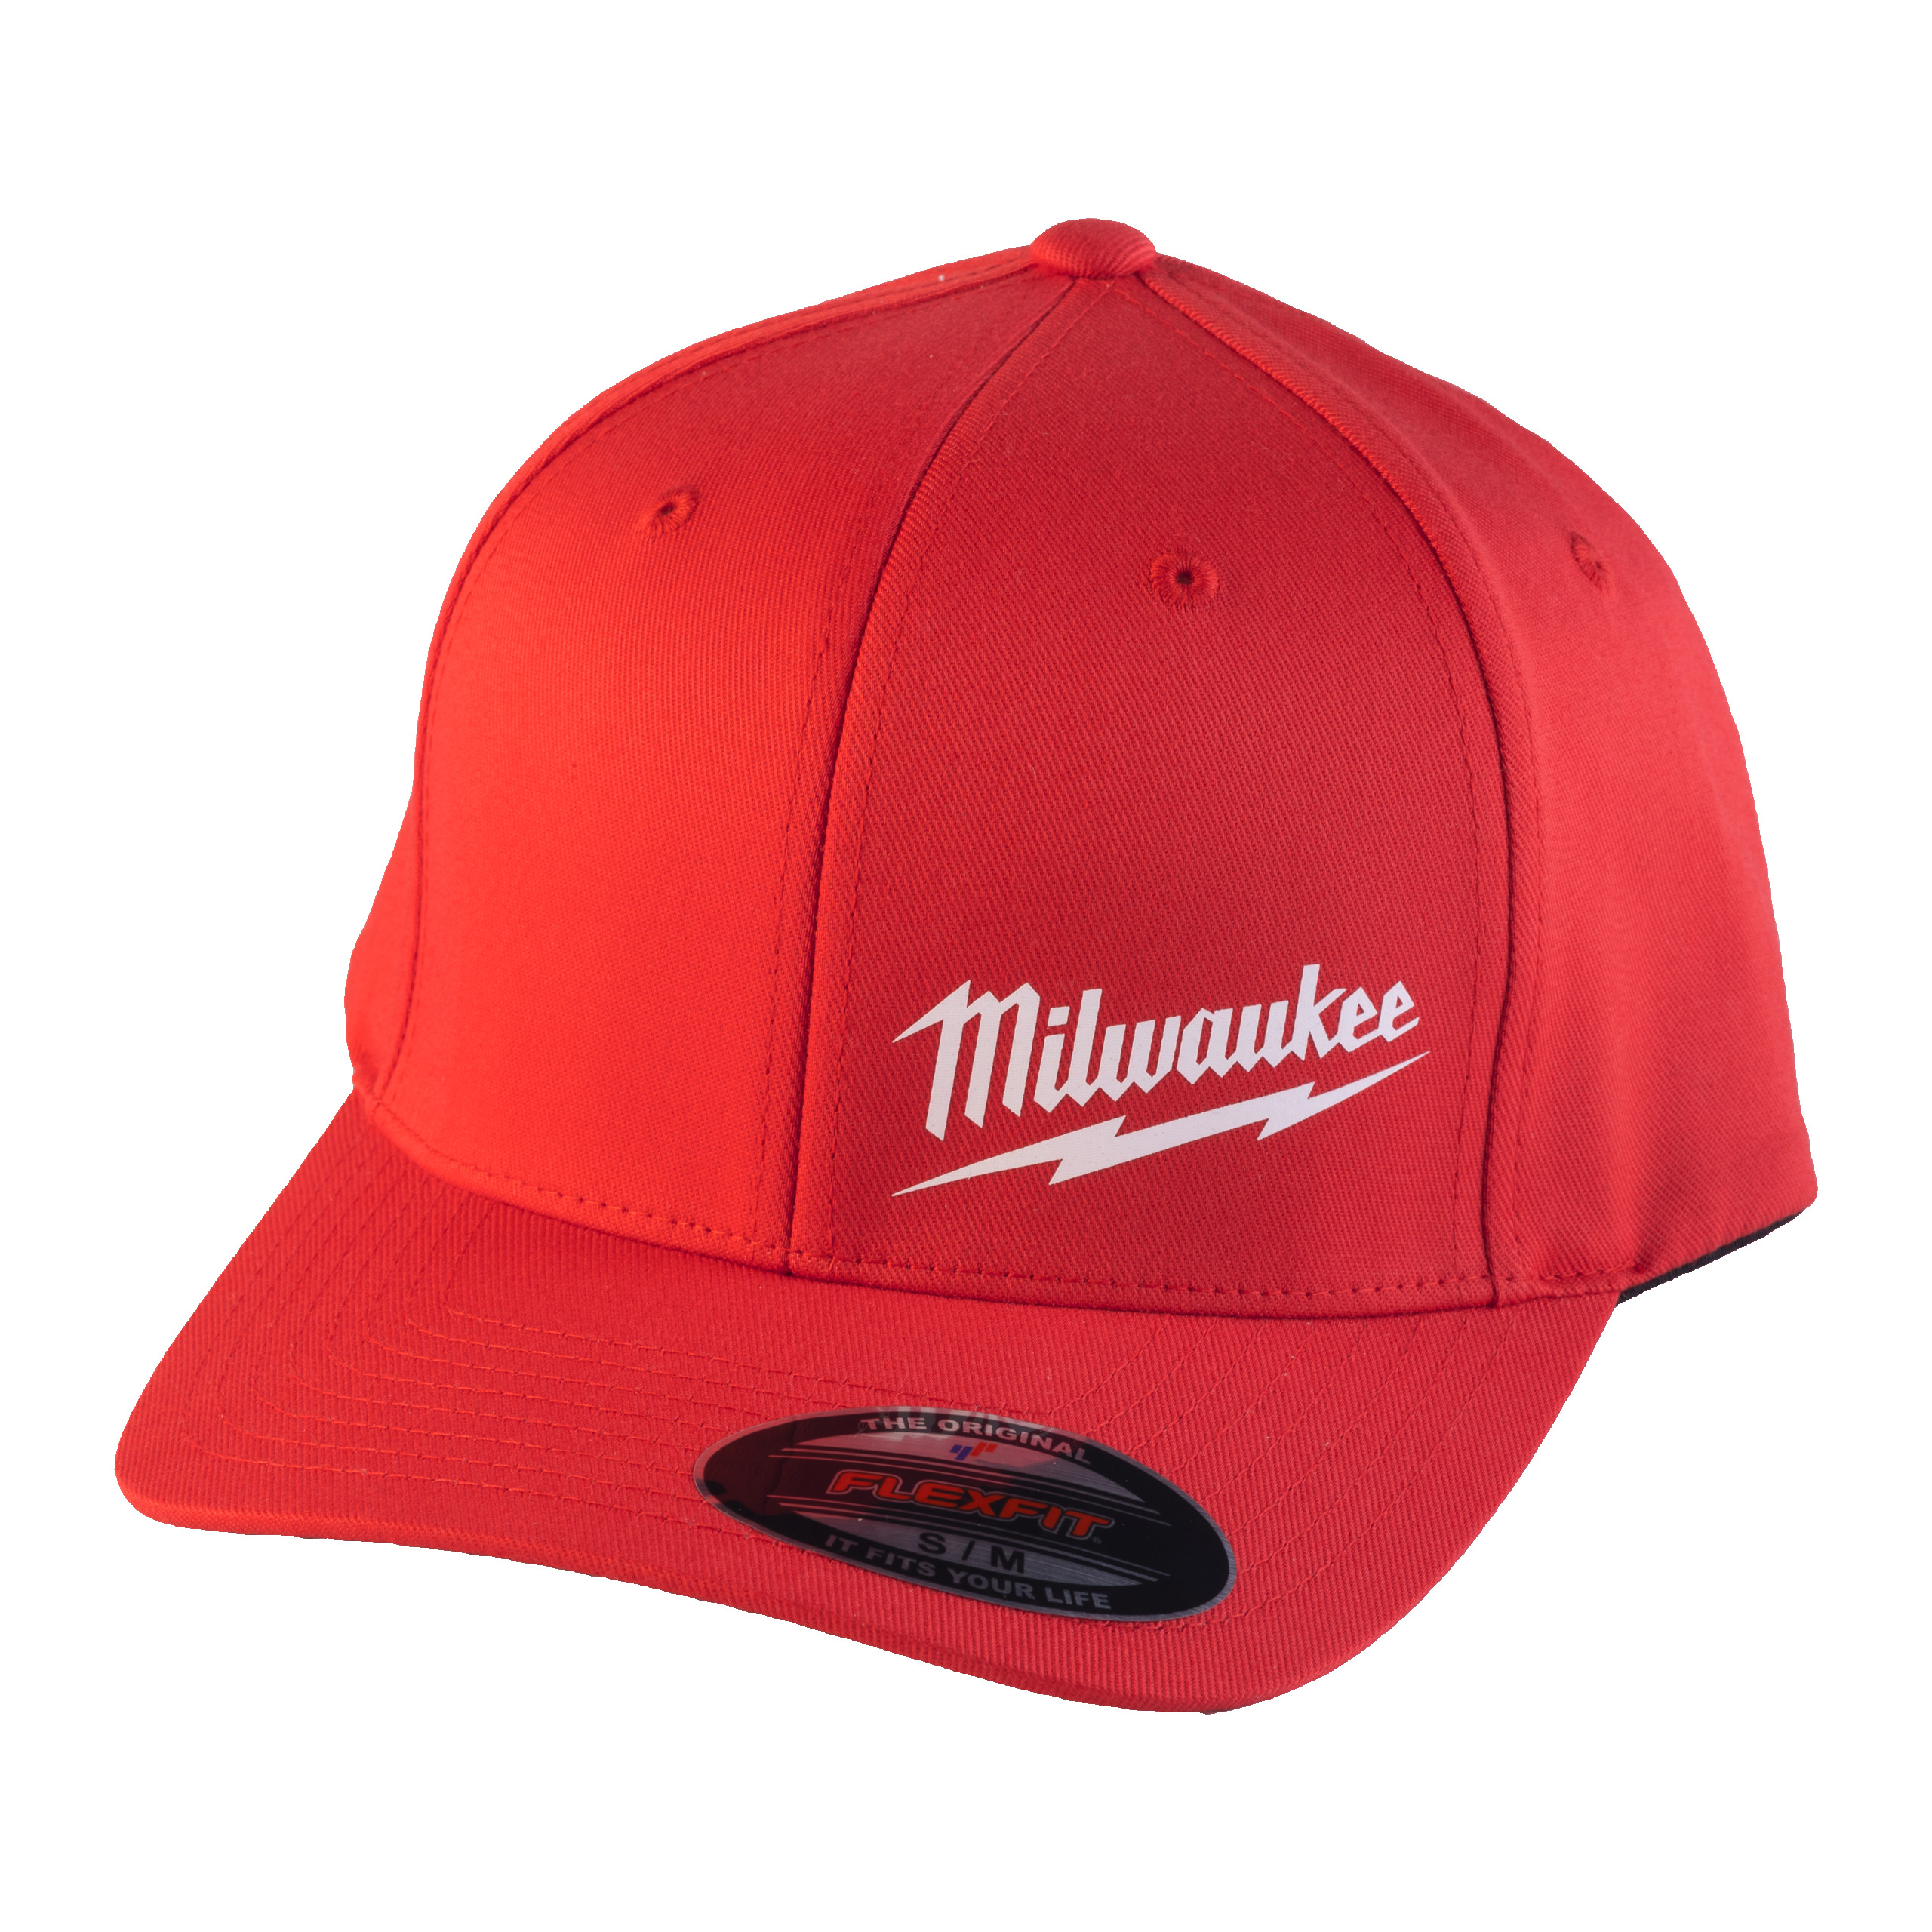 Baseball Kappe rot Größe S/M mit UV-Schutz (BCSRD-S/M)